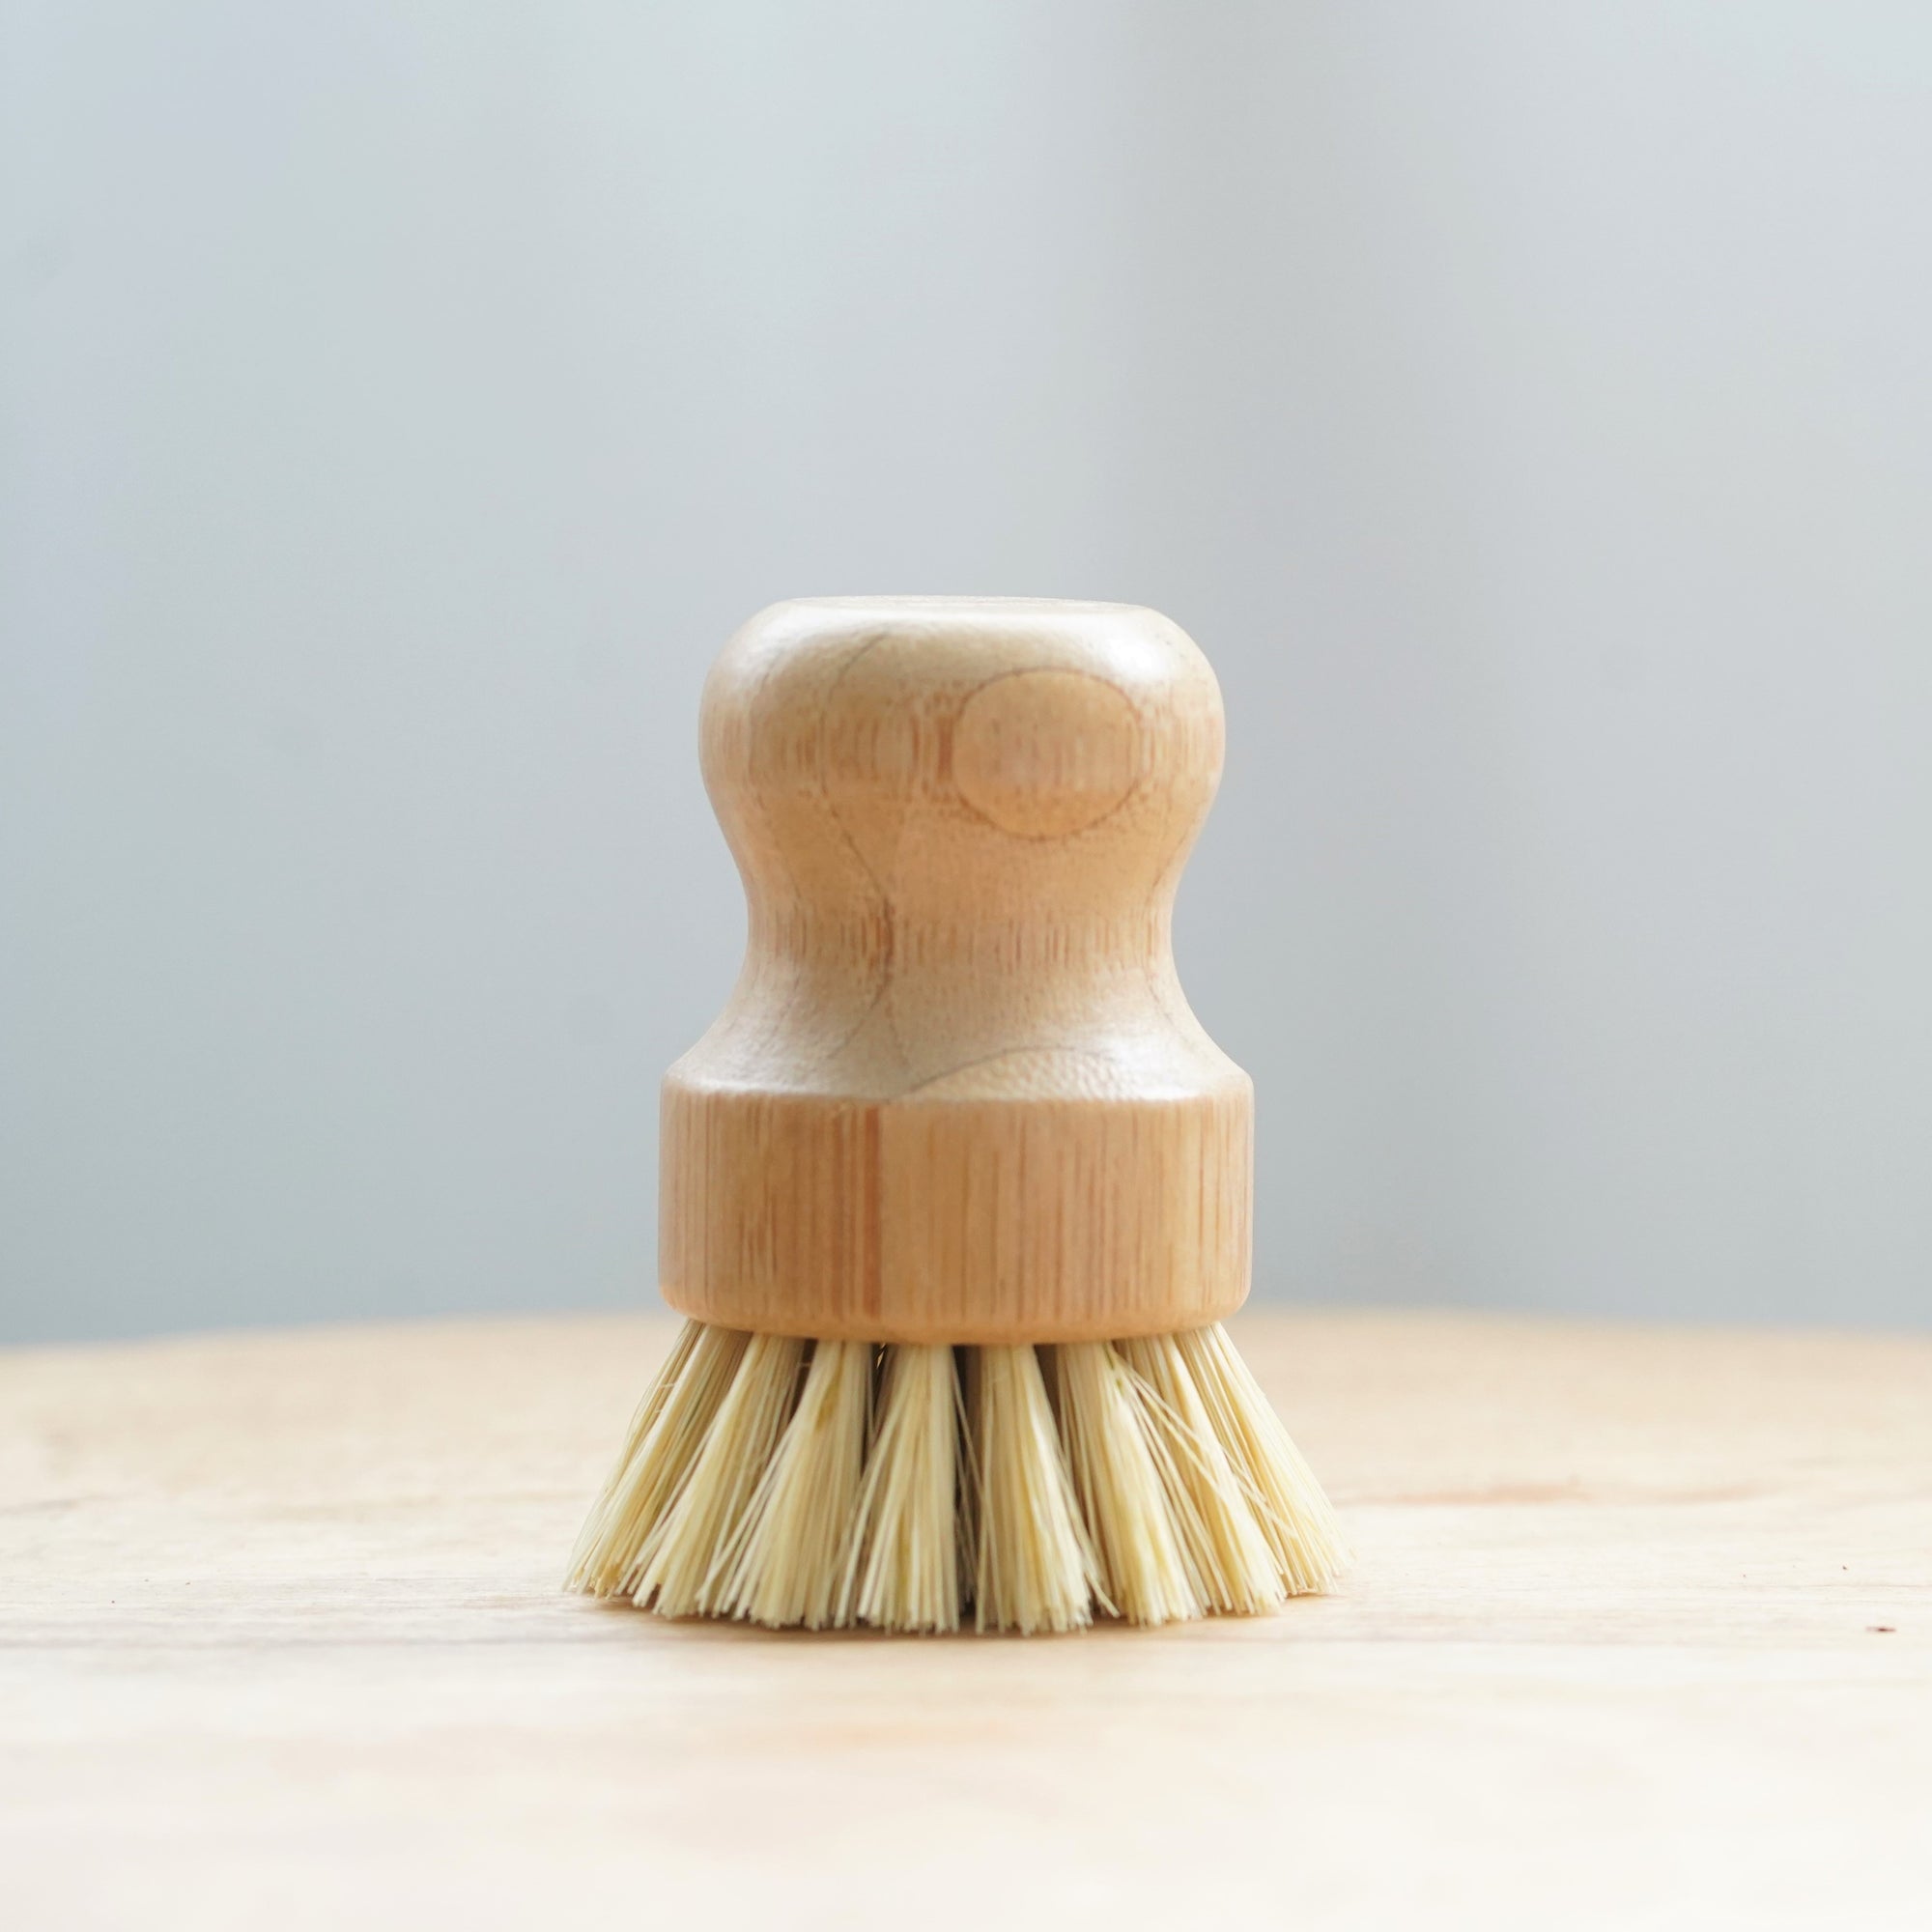 Bamboo Dish Brush Set  Eco-friendly Washing Up Brushes – JAAC & ZAAK